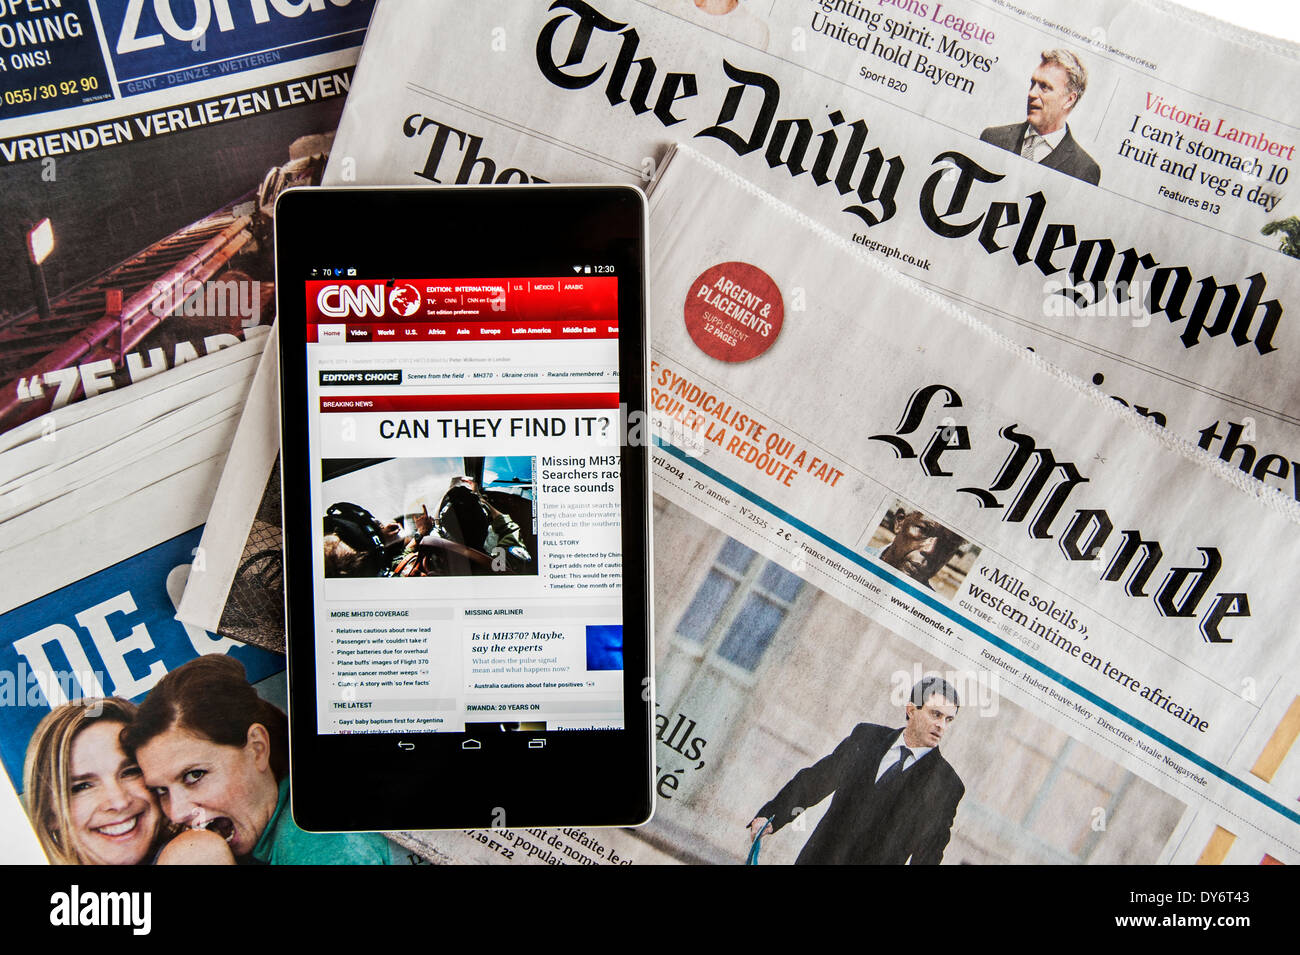 Touchscreen digitale compressa con CNN International news e il britannico Daily Telegraph e il francese Le Monde quotidiani europei Foto Stock